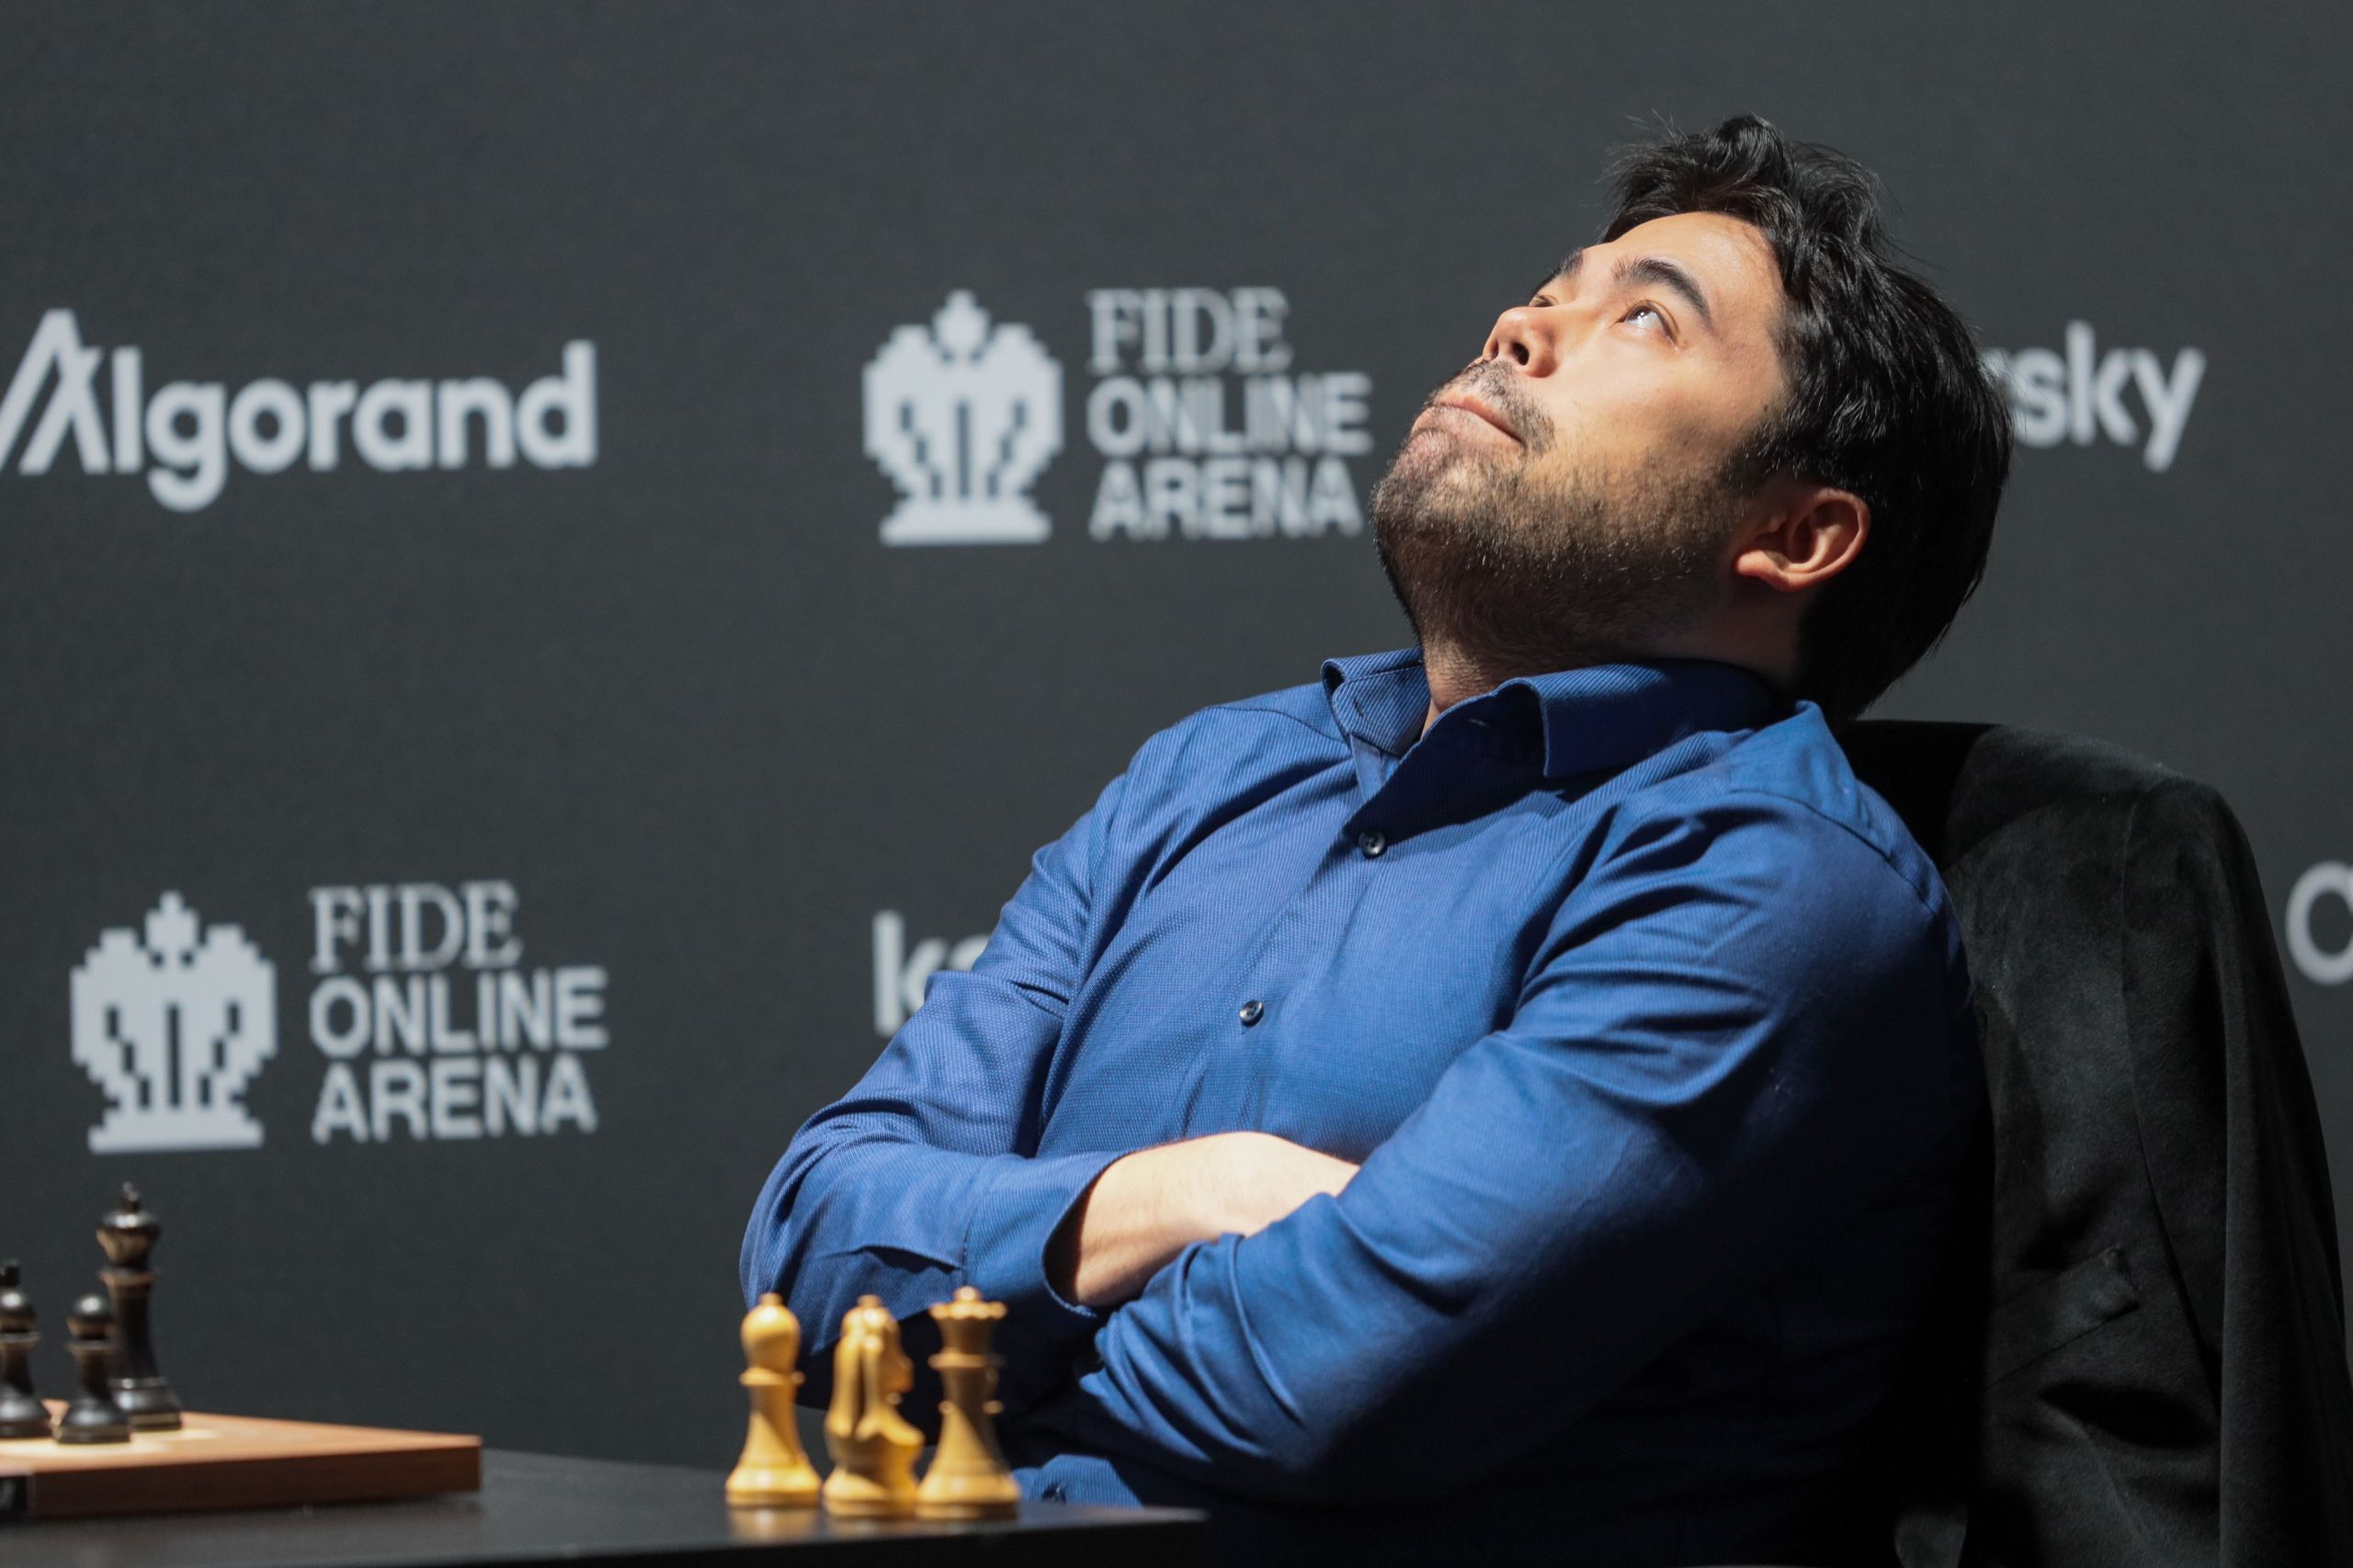 FIDE Grand Prix Berlin Final: Game 1 Recap